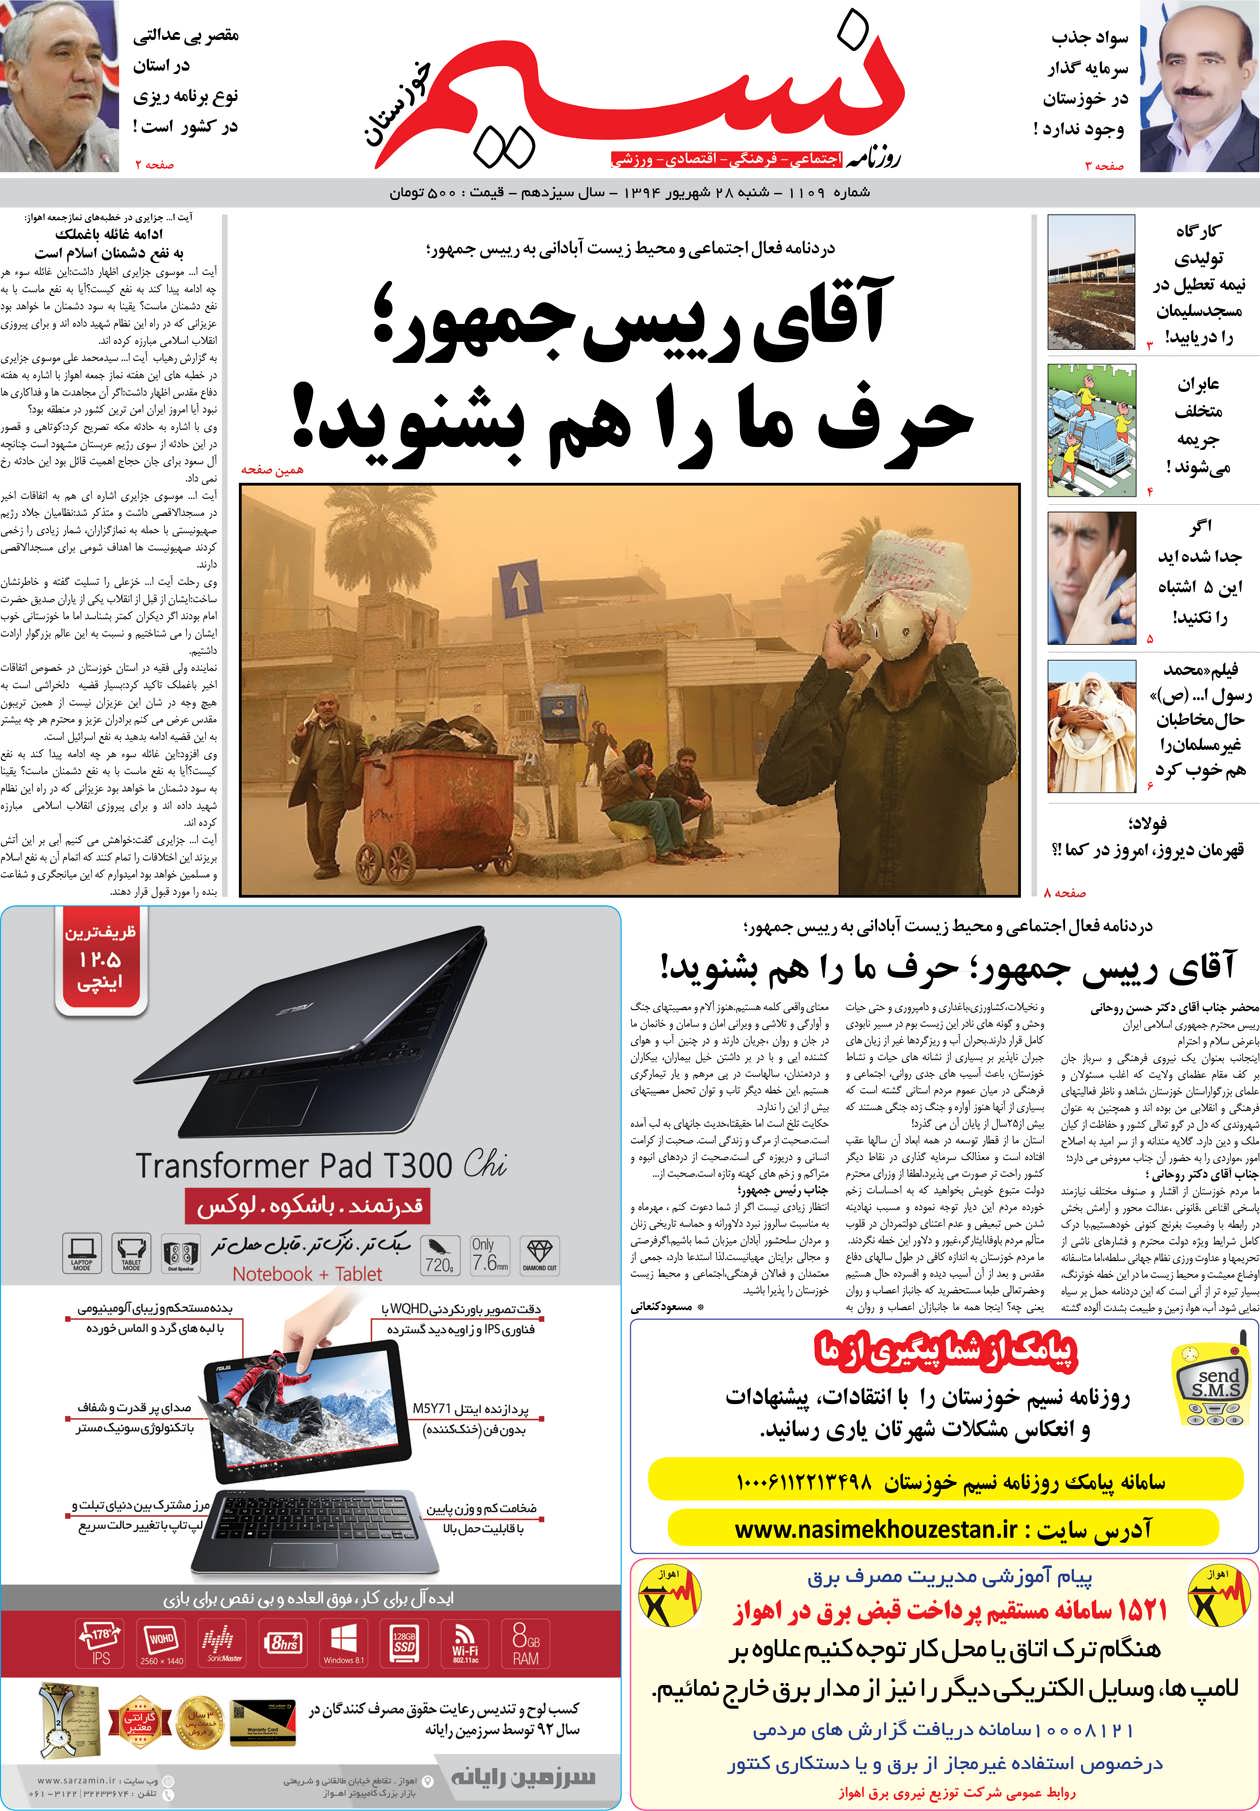 صفحه اصلی روزنامه نسیم شماره 1109